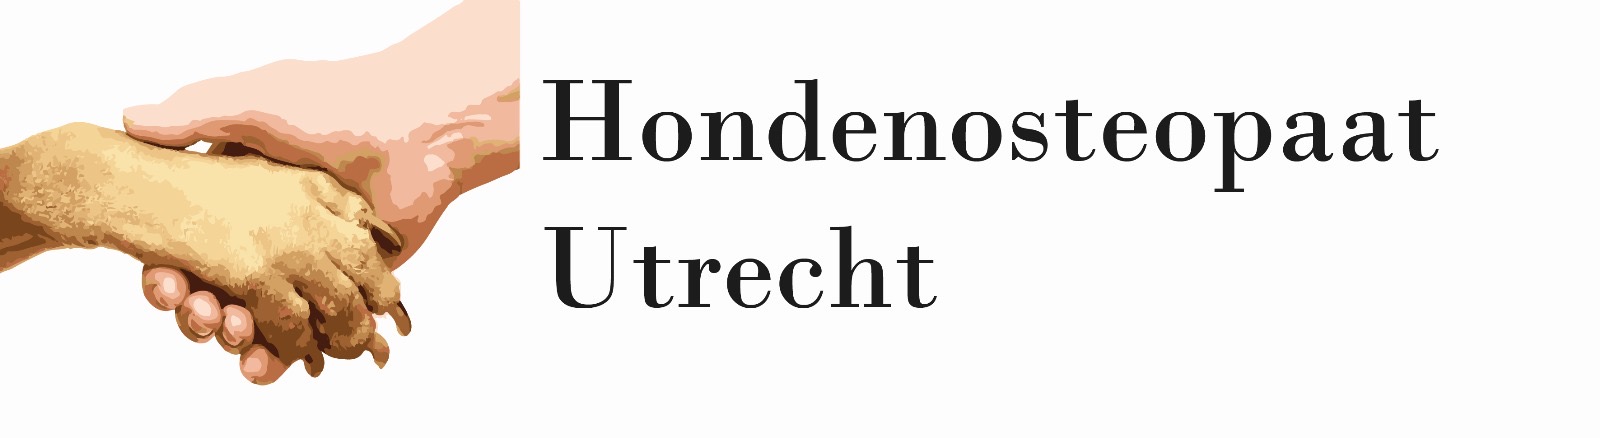 Logo Hondenosteopaat Utrecht